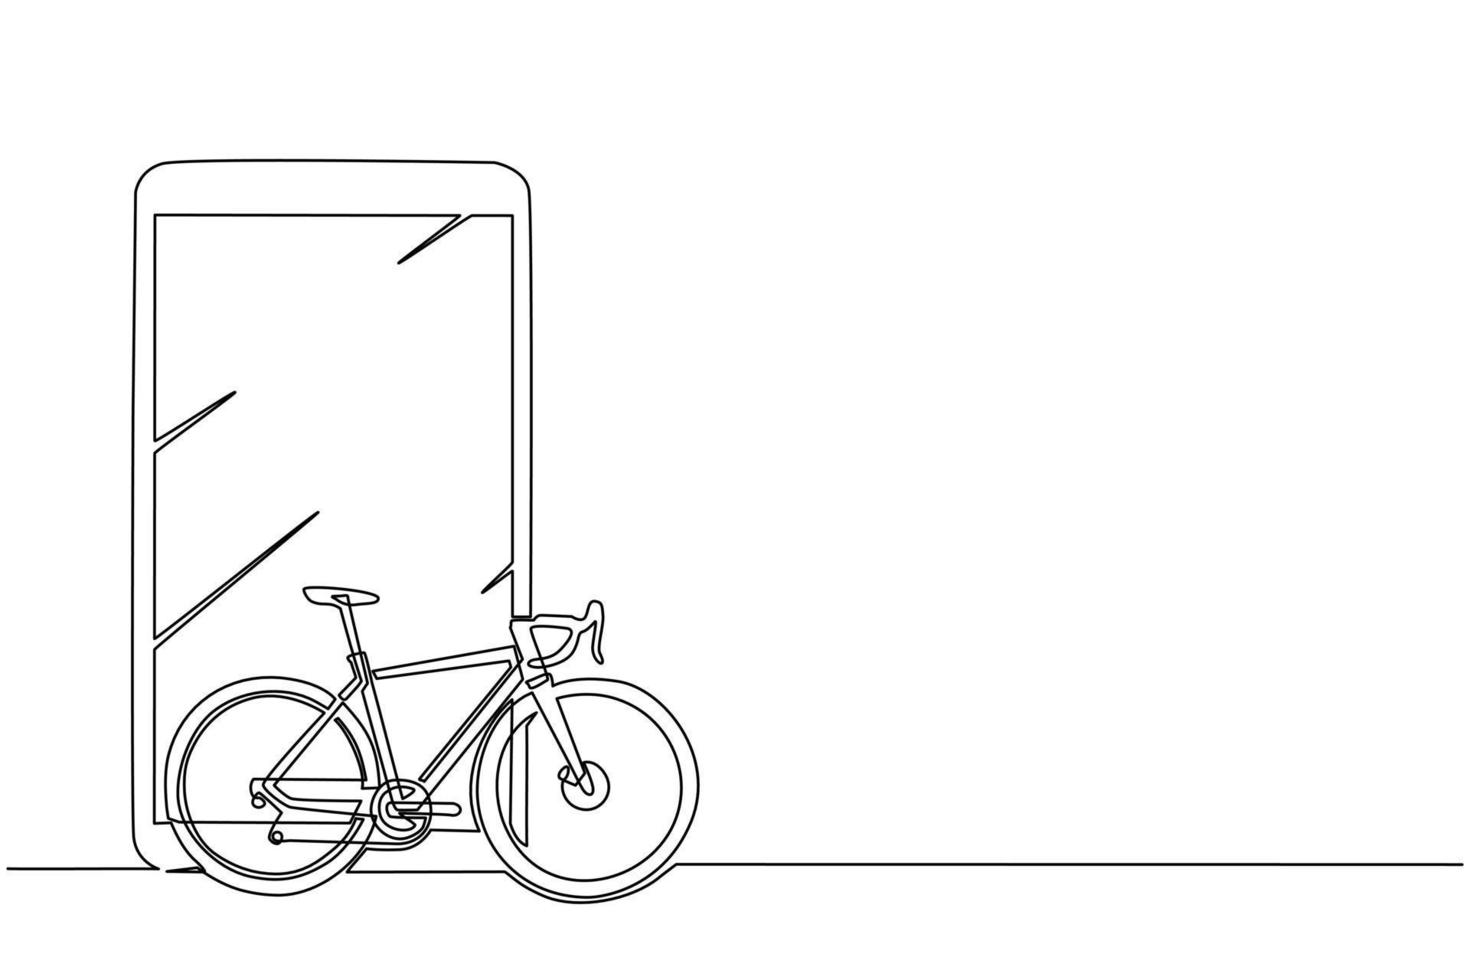 teléfono inteligente de dibujo de una sola línea y bicicleta de carretera. vehículo ecológico, icono monocromo de bicicleta deportiva. atributo de viaje de la ciudad de velocidad, símbolo de hobby ciclista. vector gráfico de diseño de dibujo de línea continua